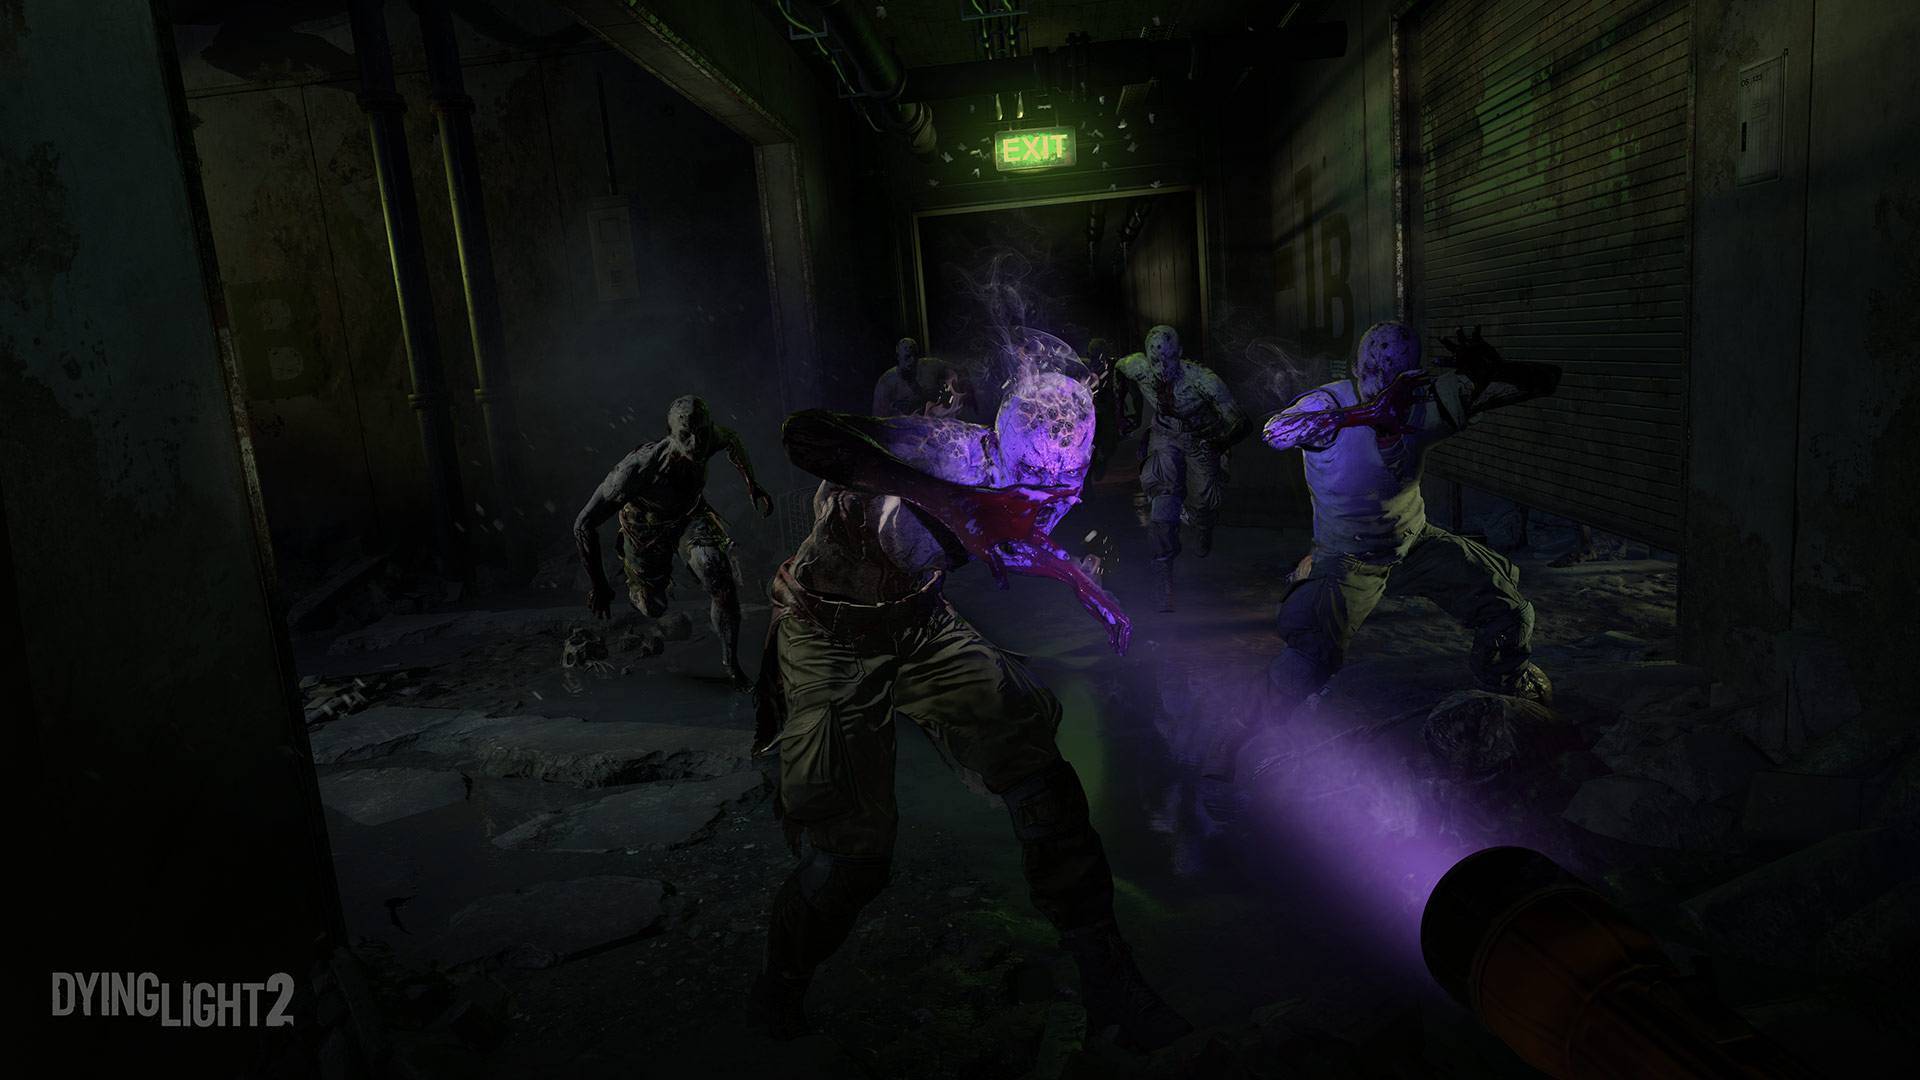 Dying Light 2: Requisitos para rodar o jogo no PC são revelados